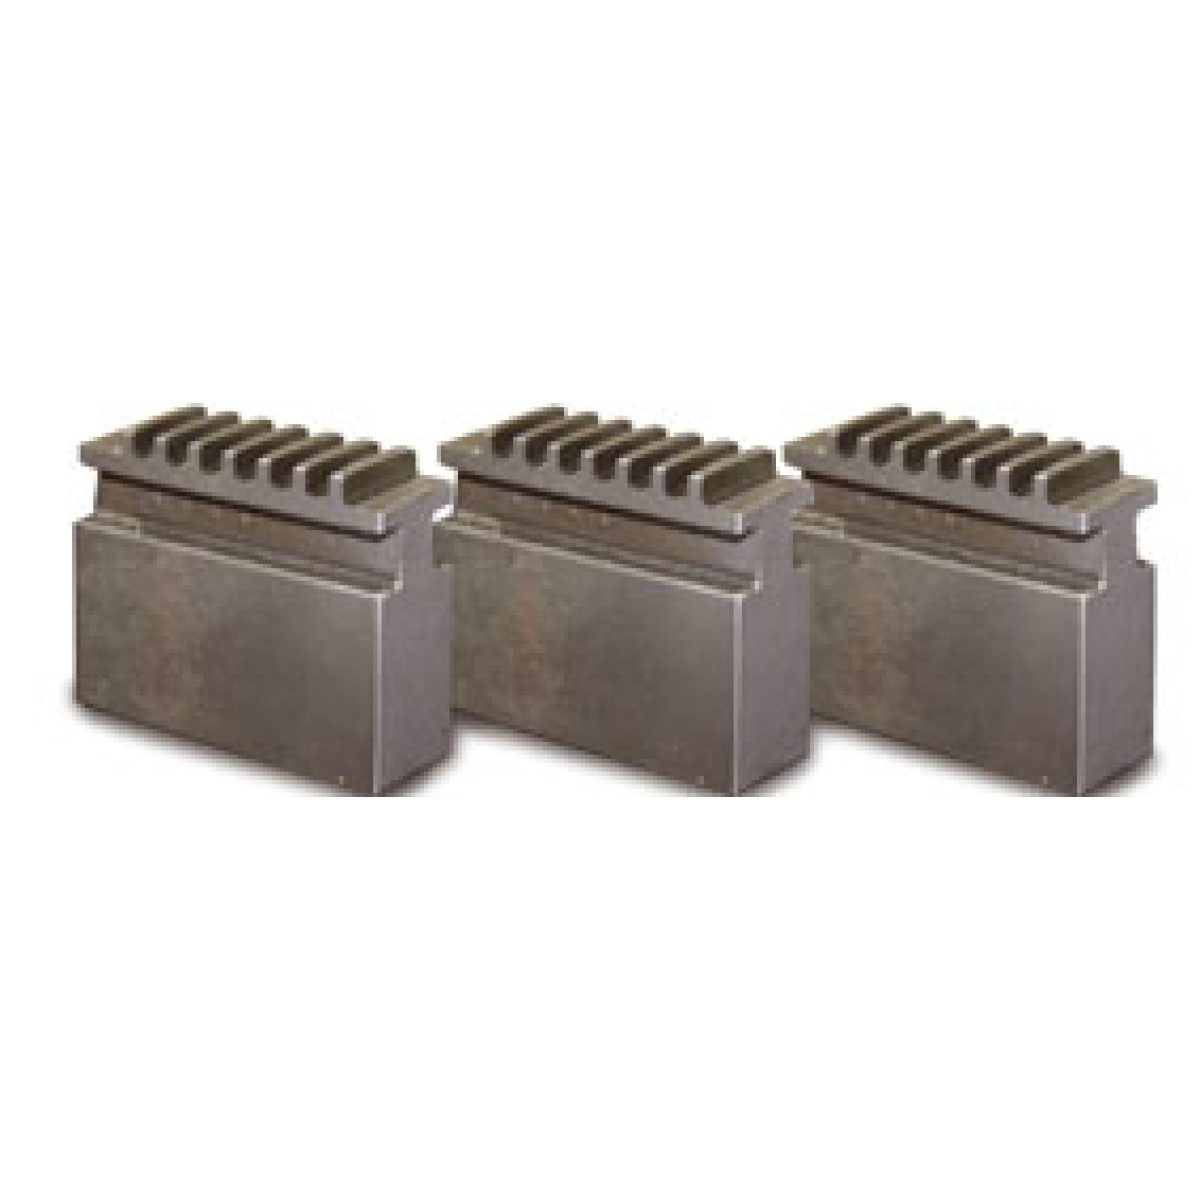 Blockbackensatz weich Für Dreibackendrehfutter Ø 250 mm Camlock DIN ISO 702-2 Nr. 6